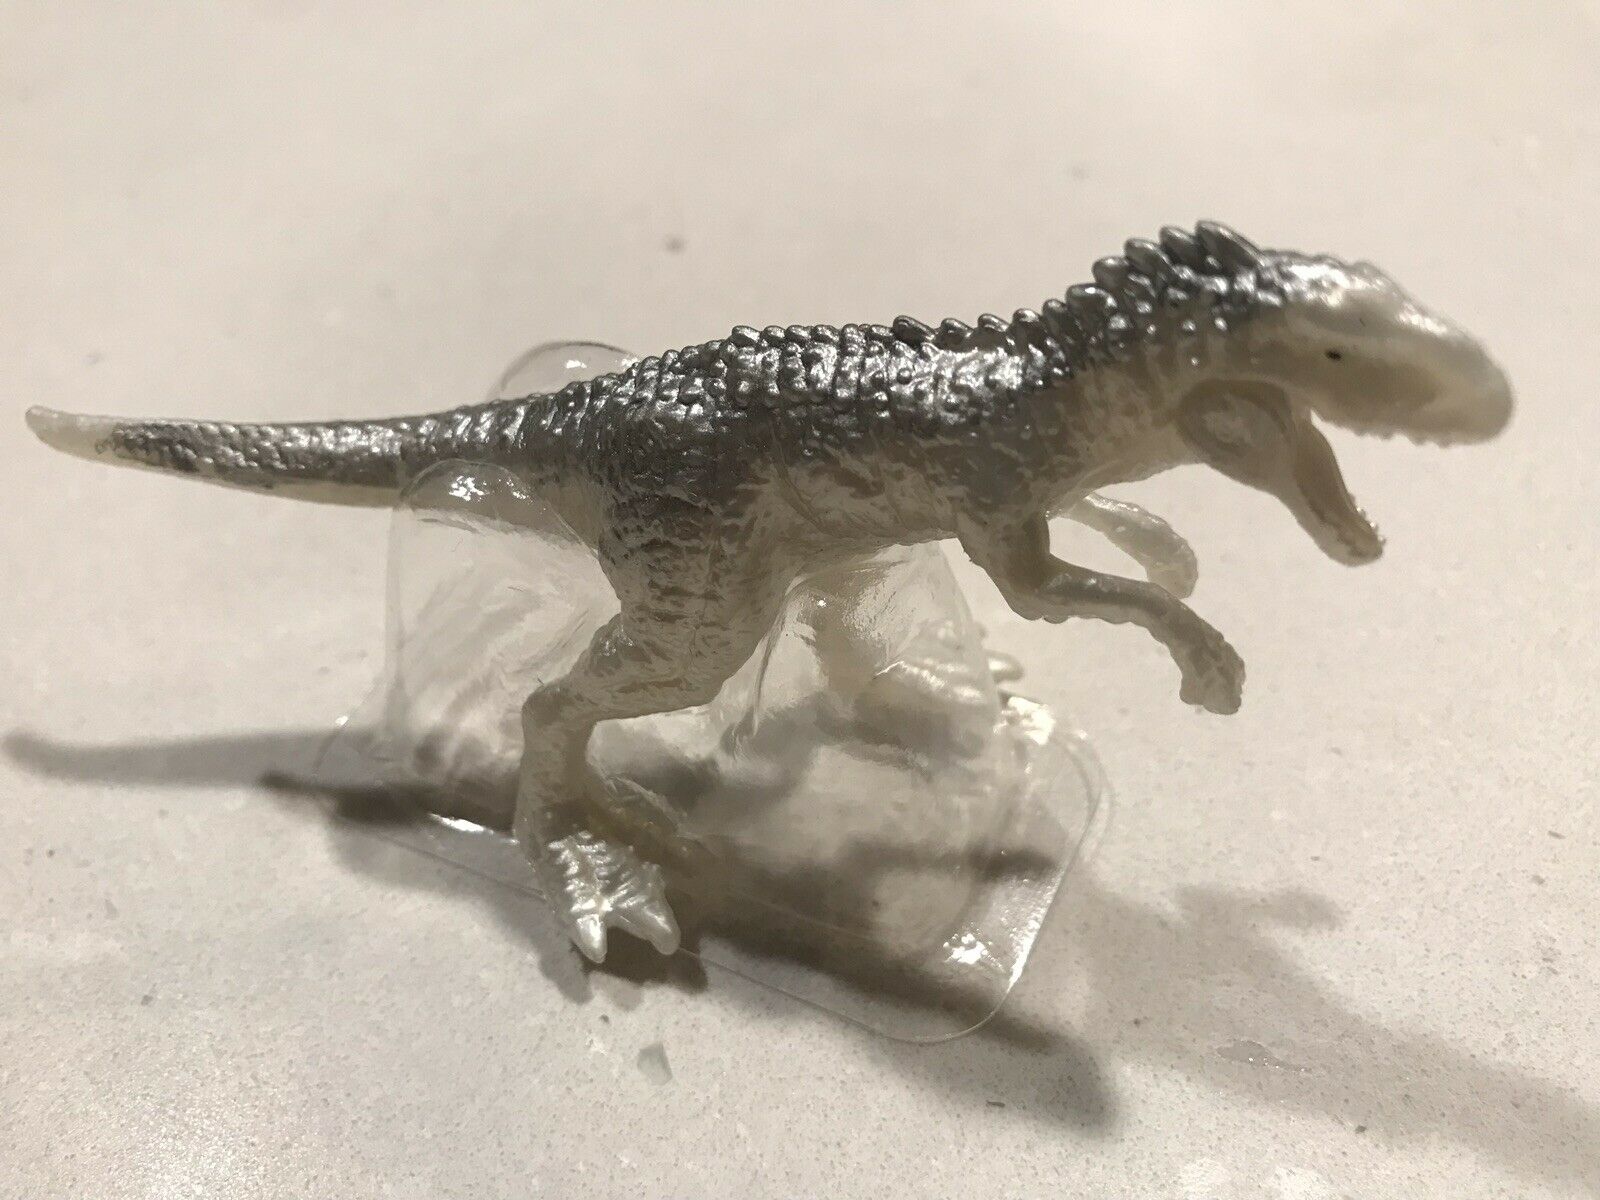 Jurassic World 2 Mini Indominus Rex - 1600x1200 Wallpaper 